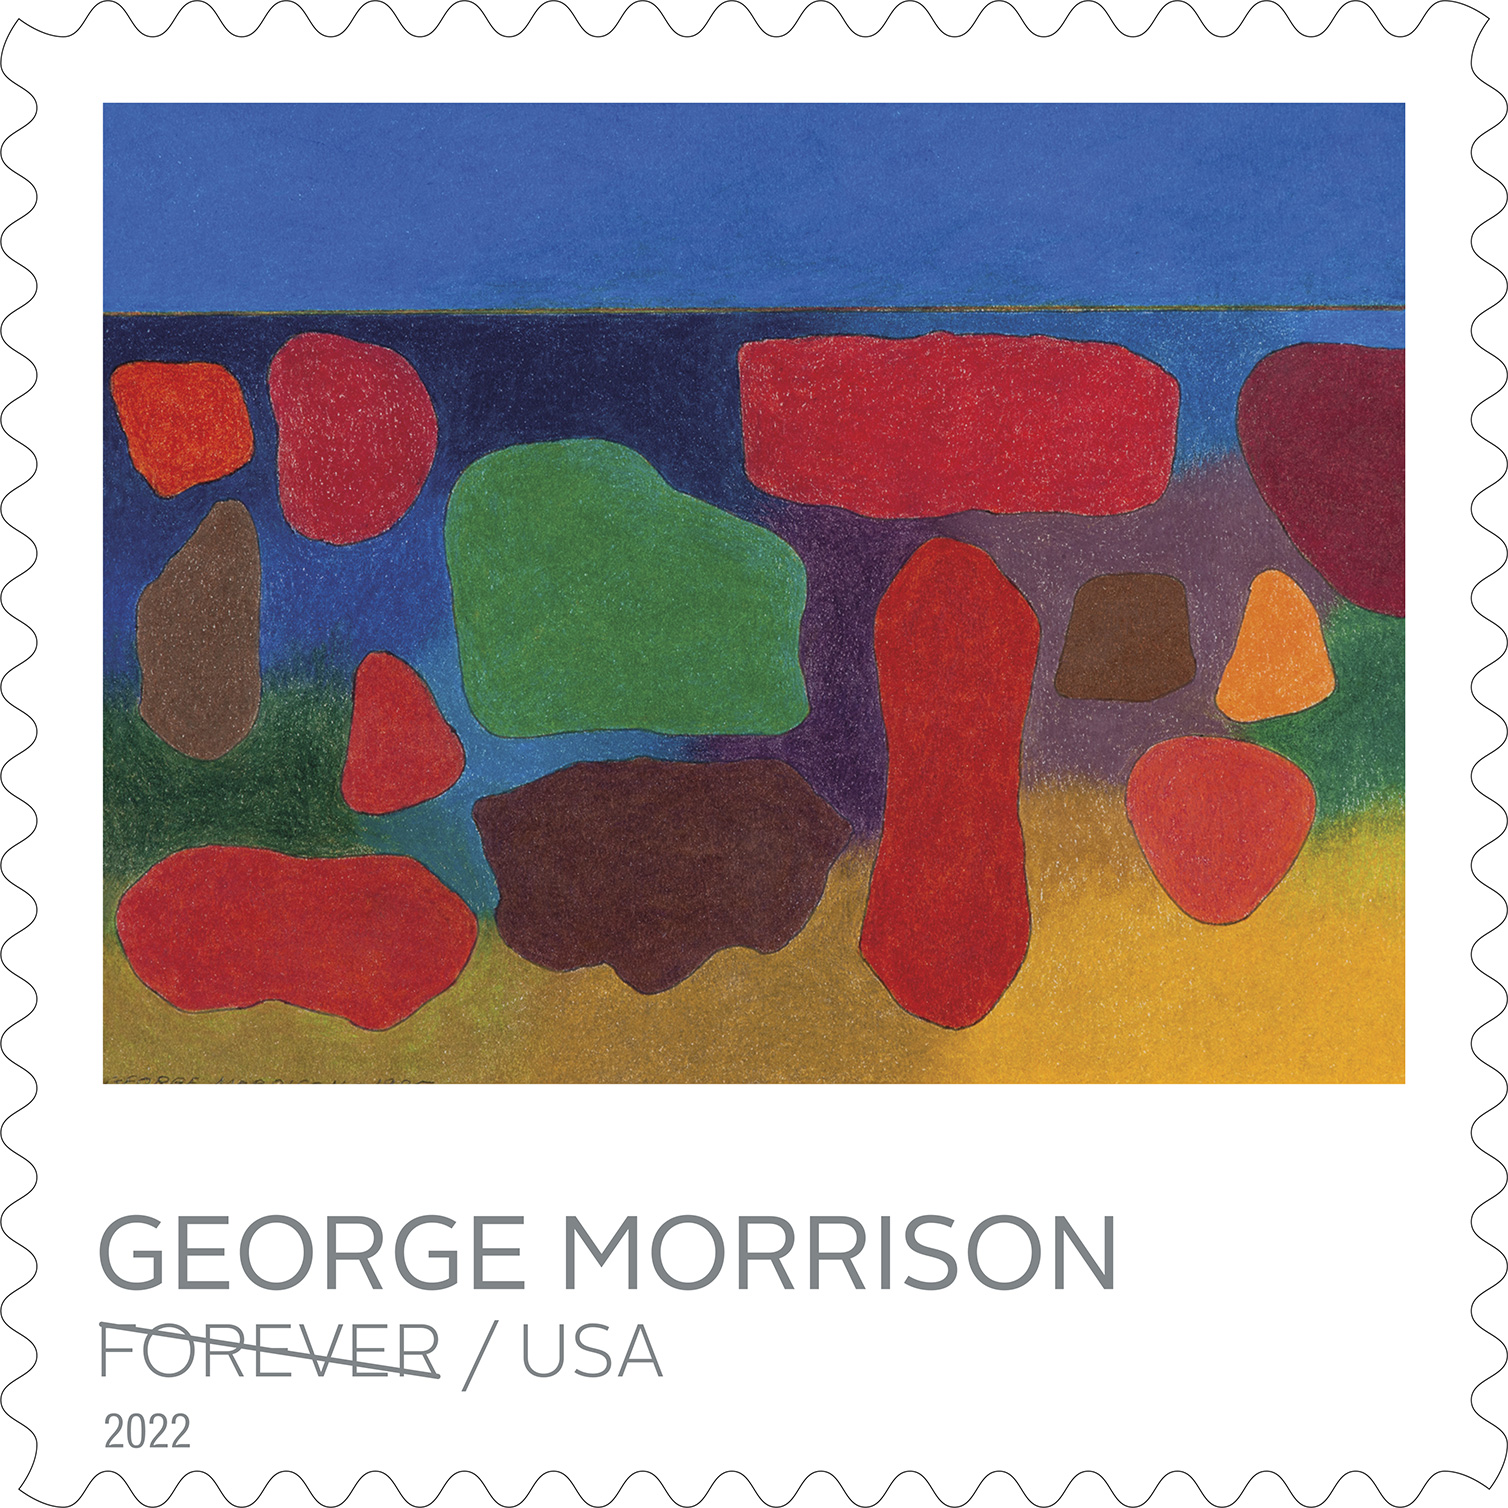 George Morrison Forever Stamp